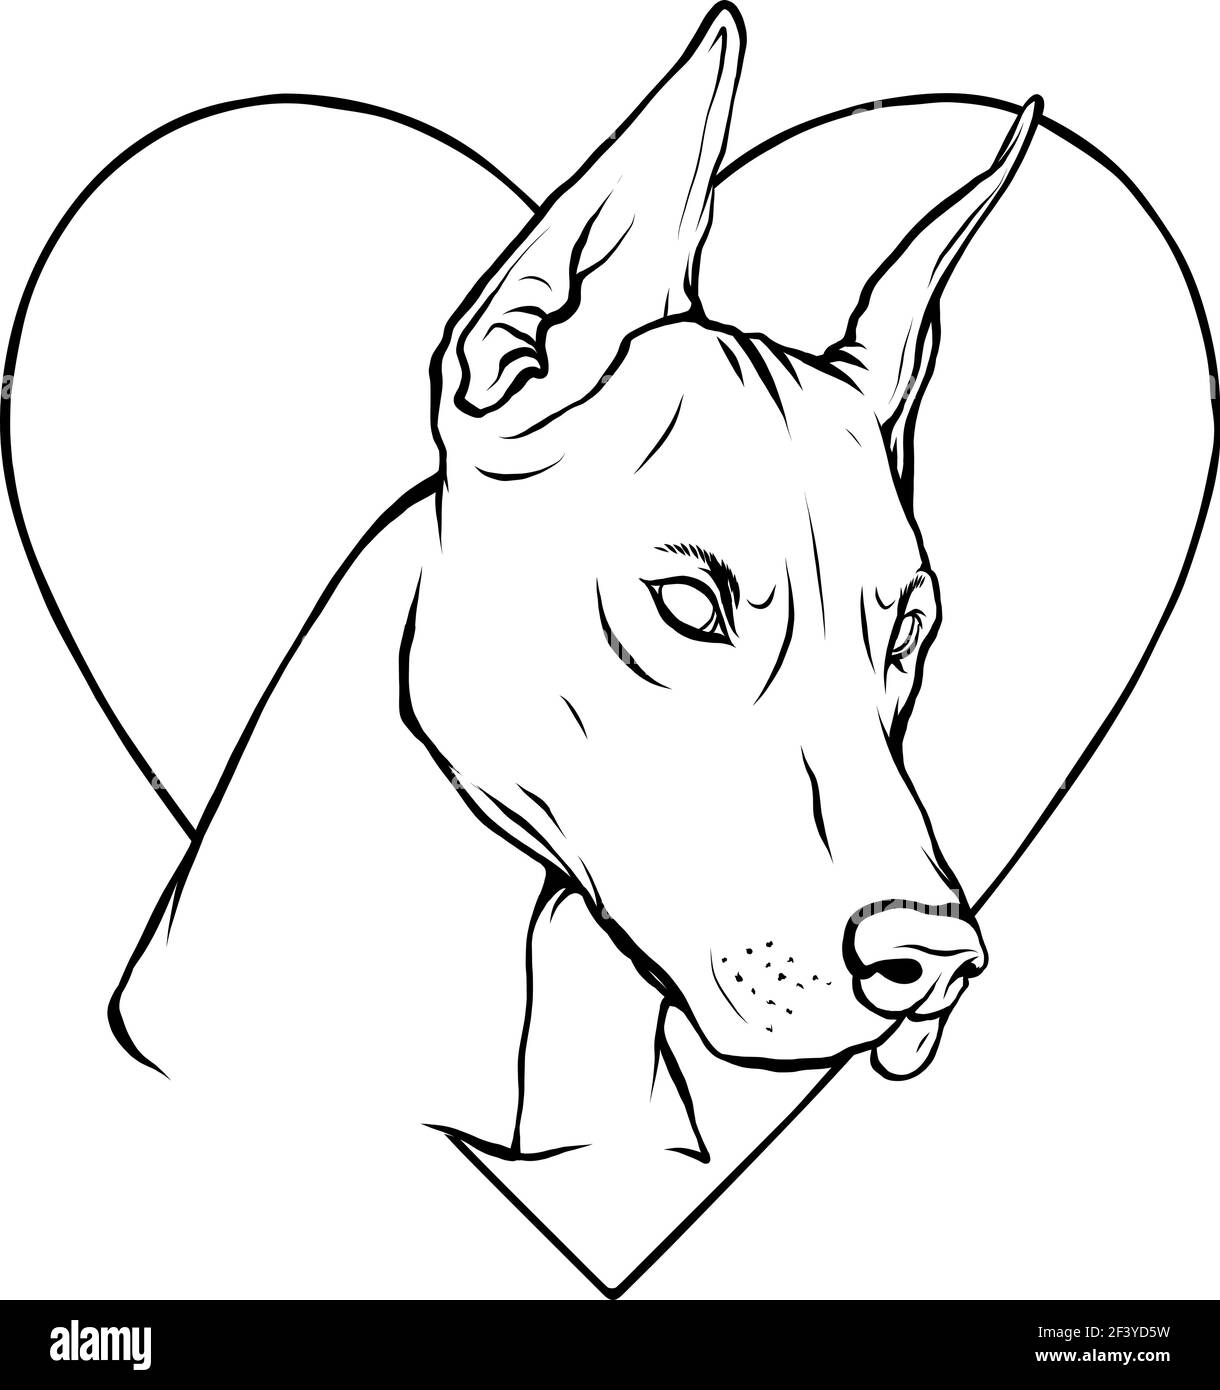 Zeichnen Sie in schwarz und weiß von Kopf Hund mit Herz vektorgrafik Stock Vektor